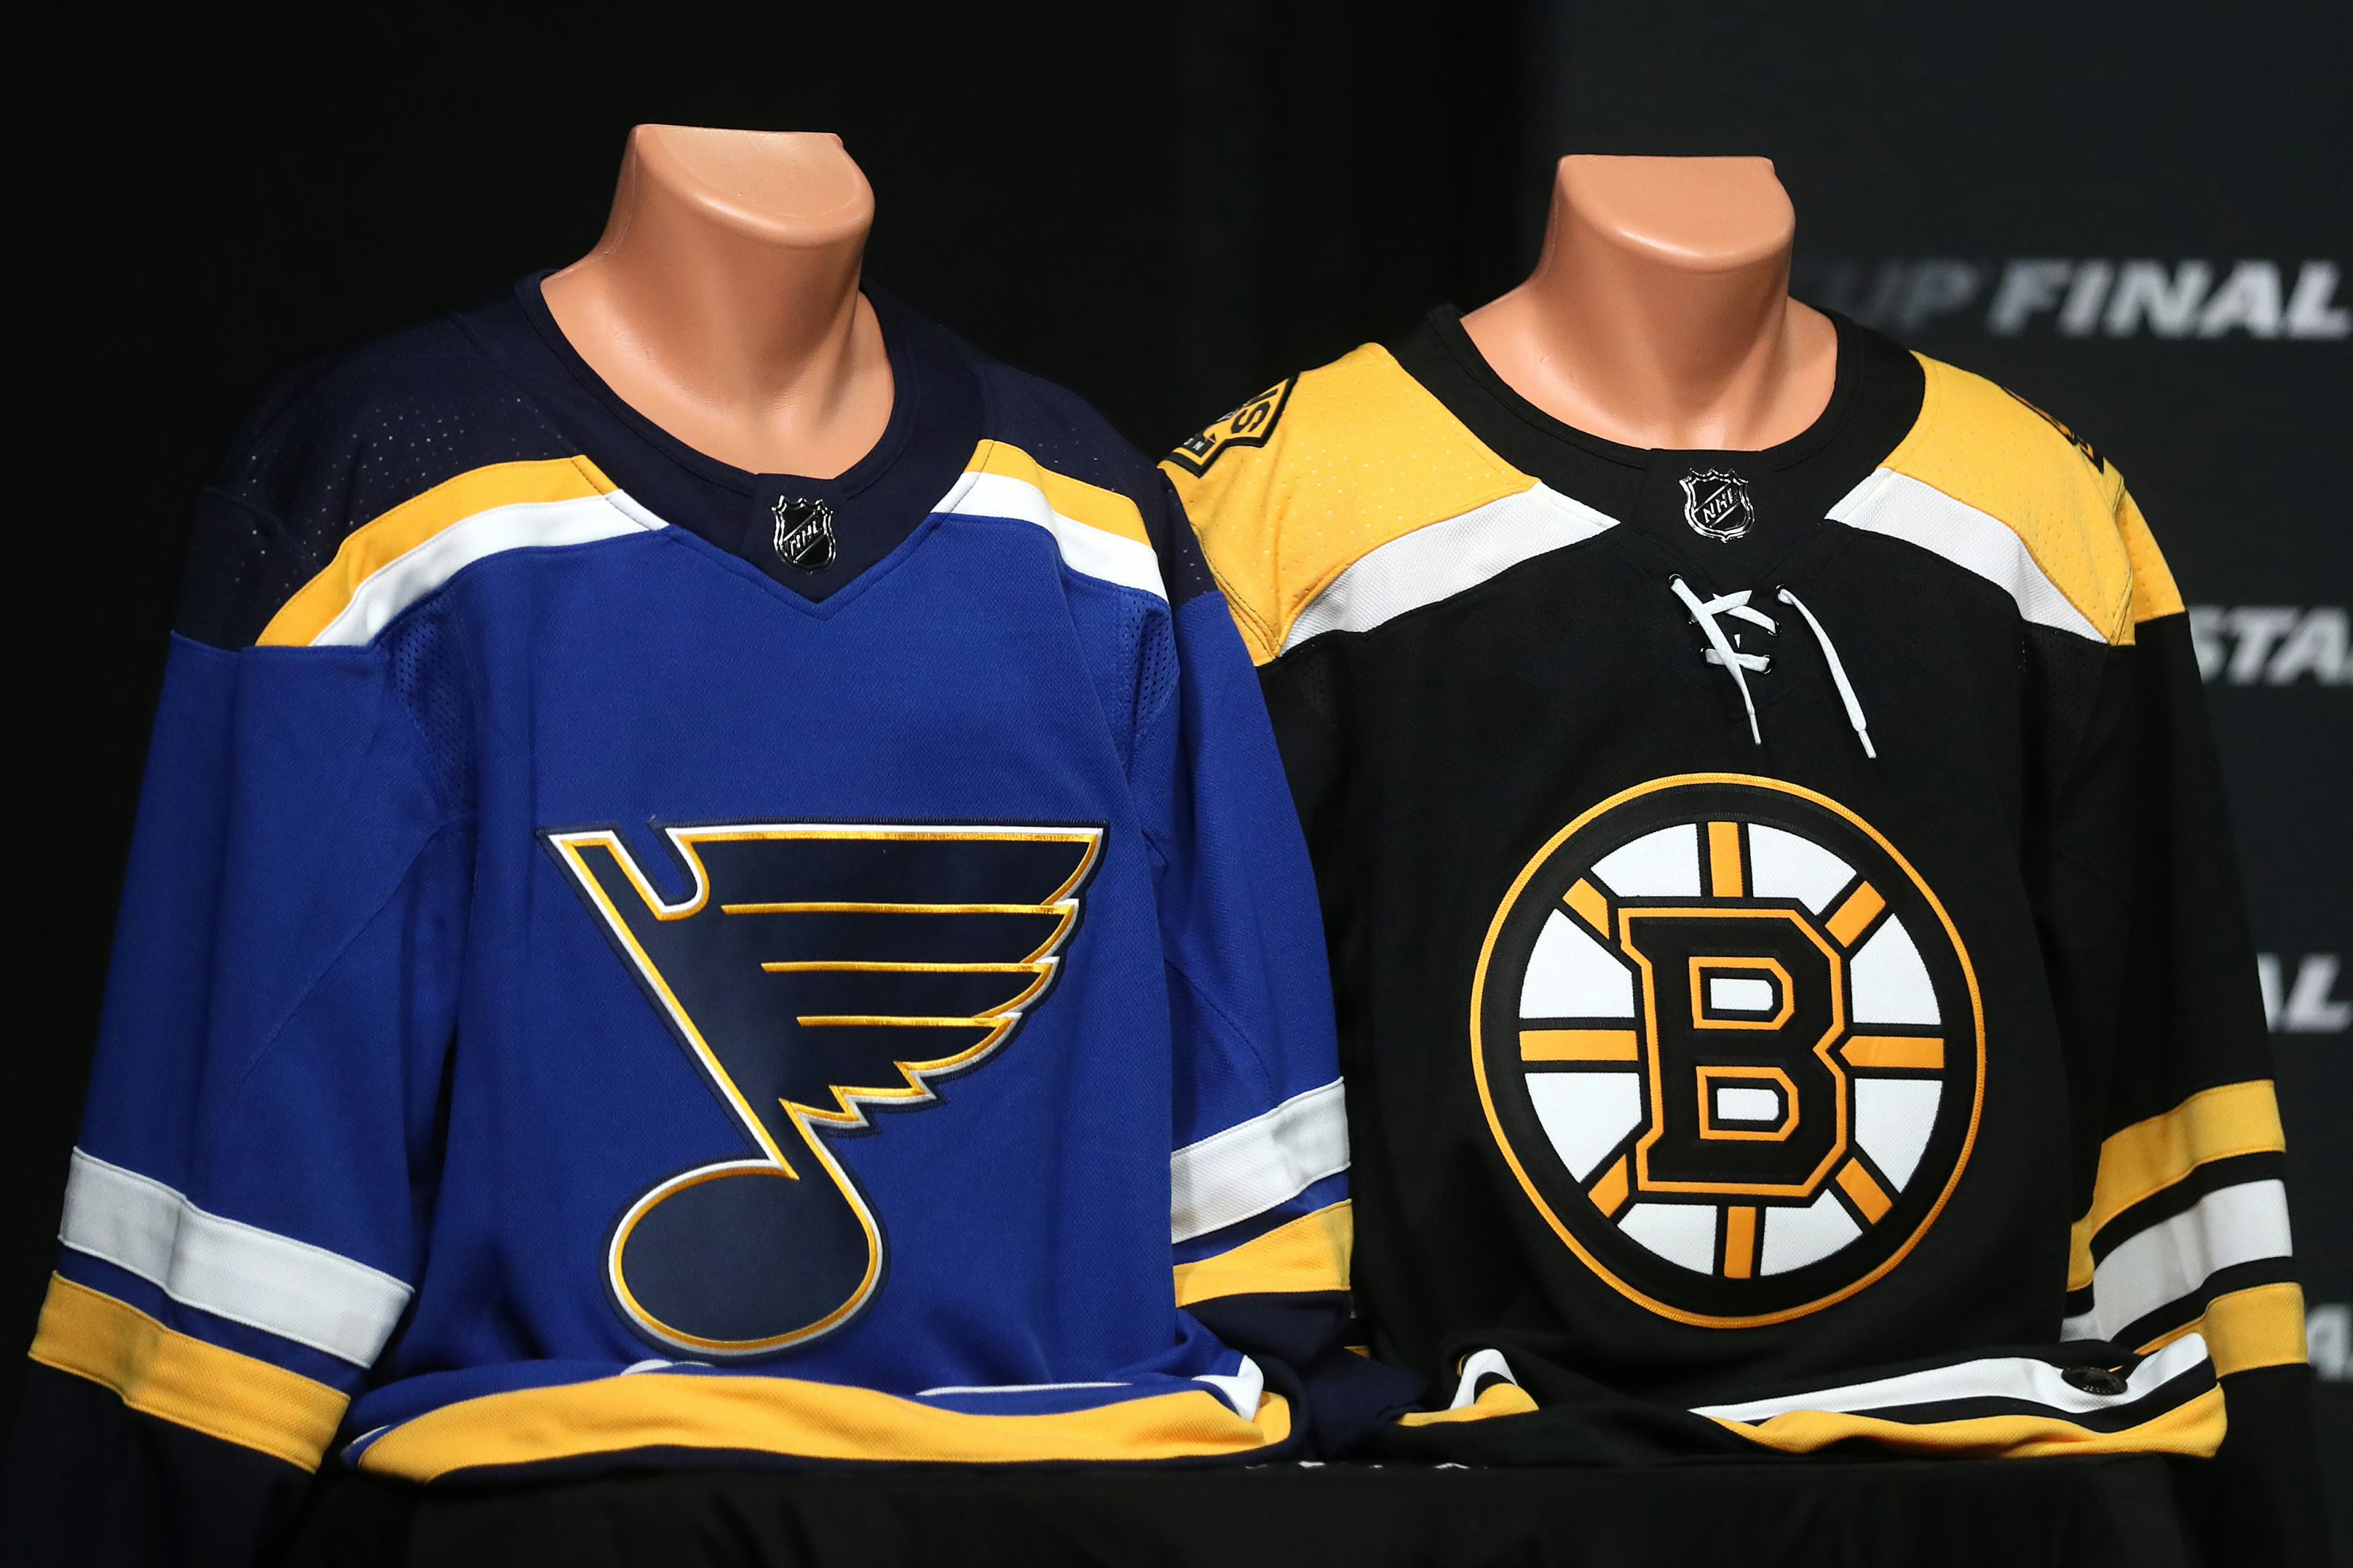 NHL Collection: Team & Fan NHL Gear